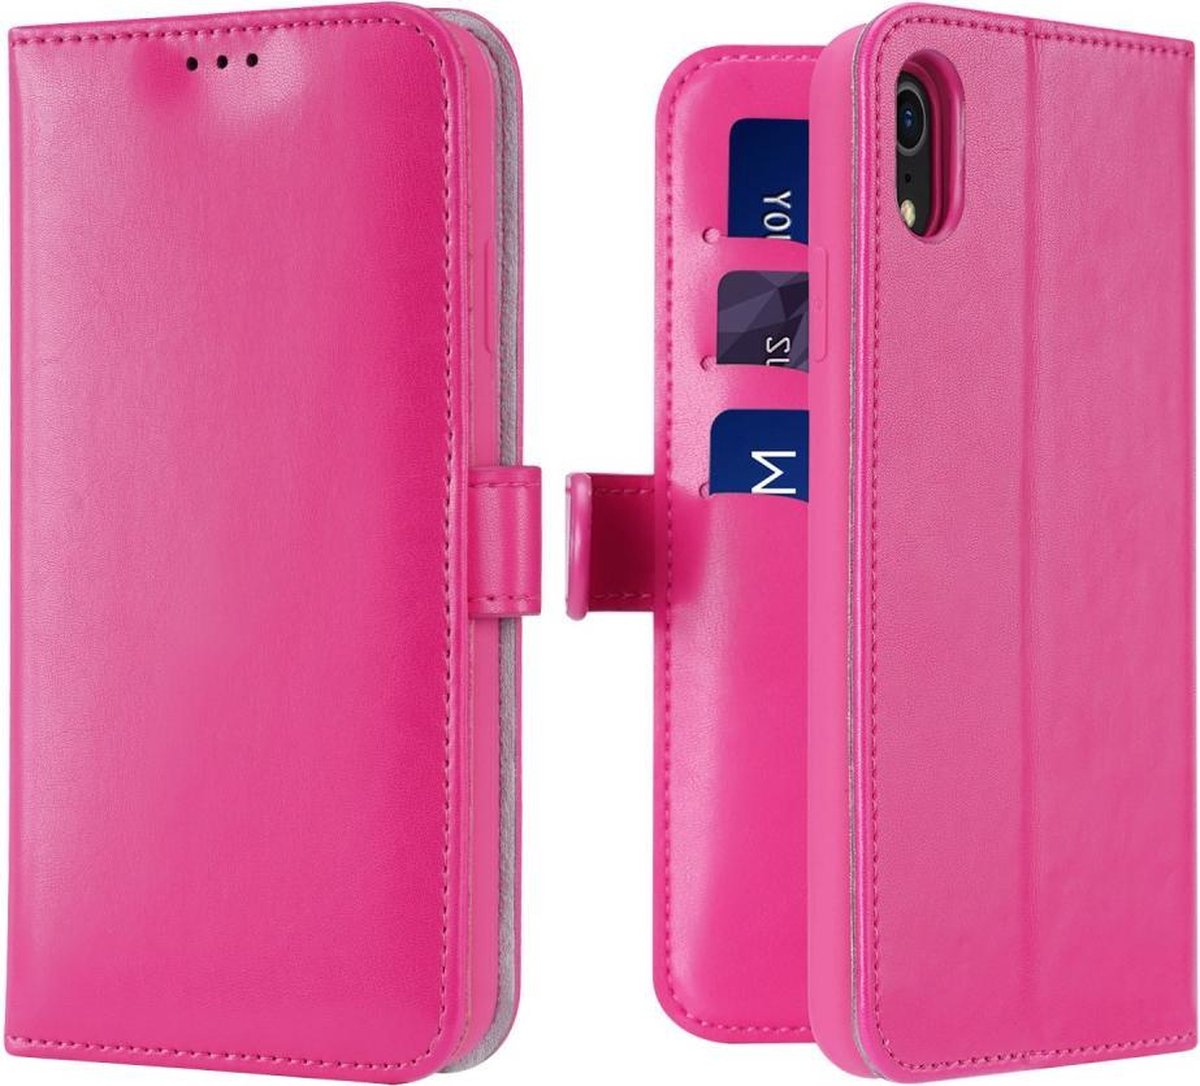 Lederen Wallet Case voor iPhone XR 6.1 inch- Roze - Dux Ducis